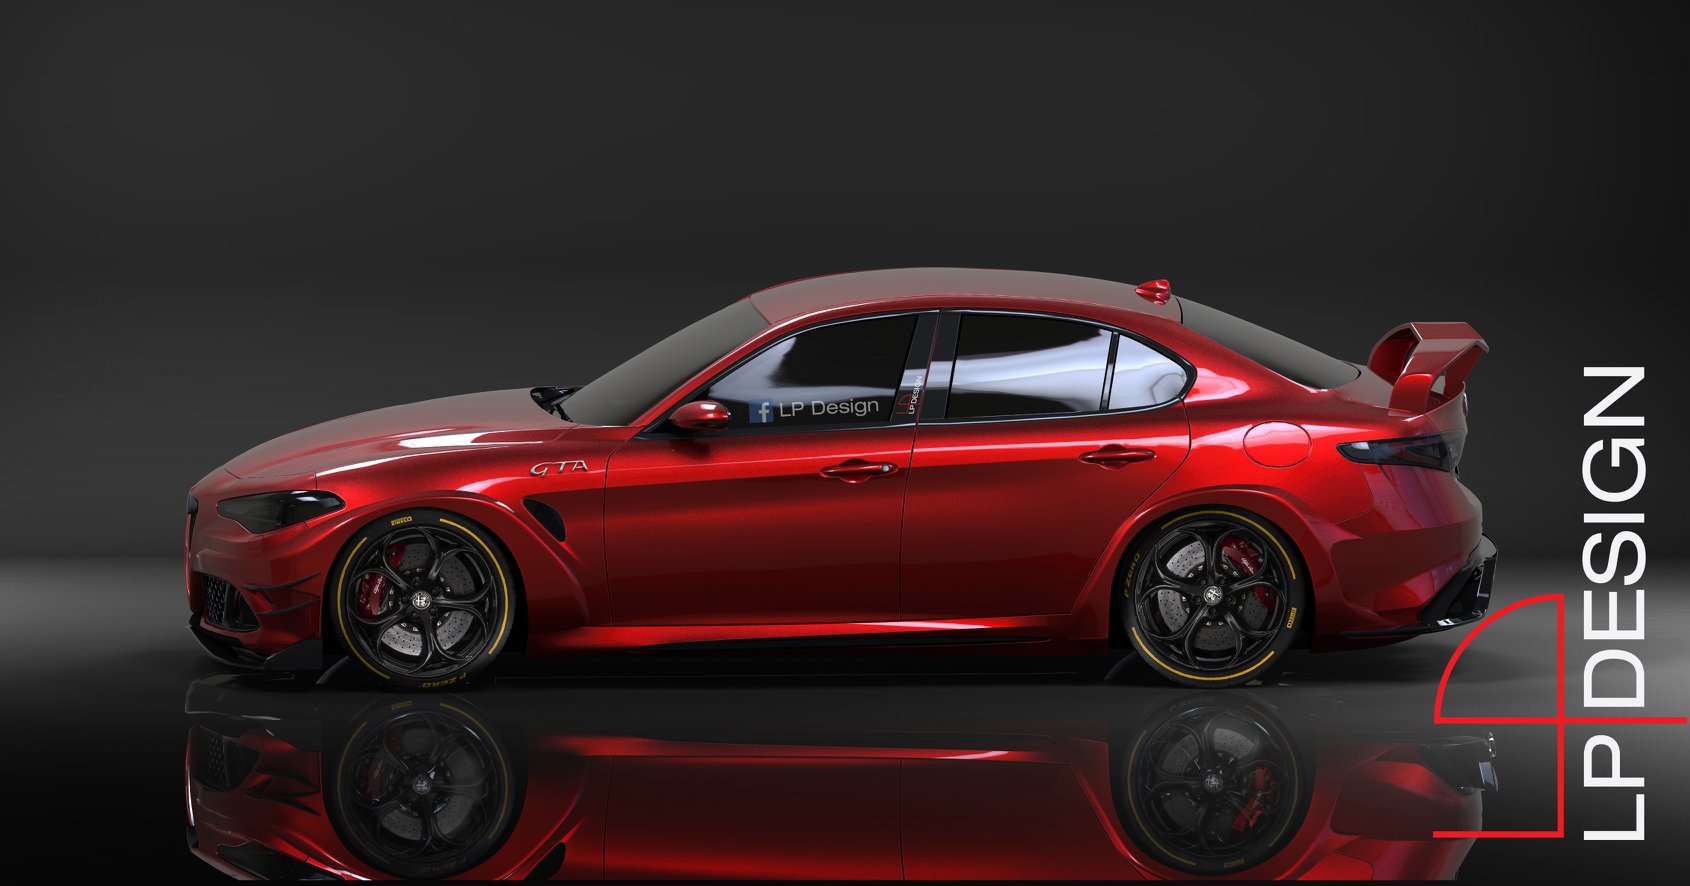 Alfa Romeo Giulia GTA 2020, render di LP Design